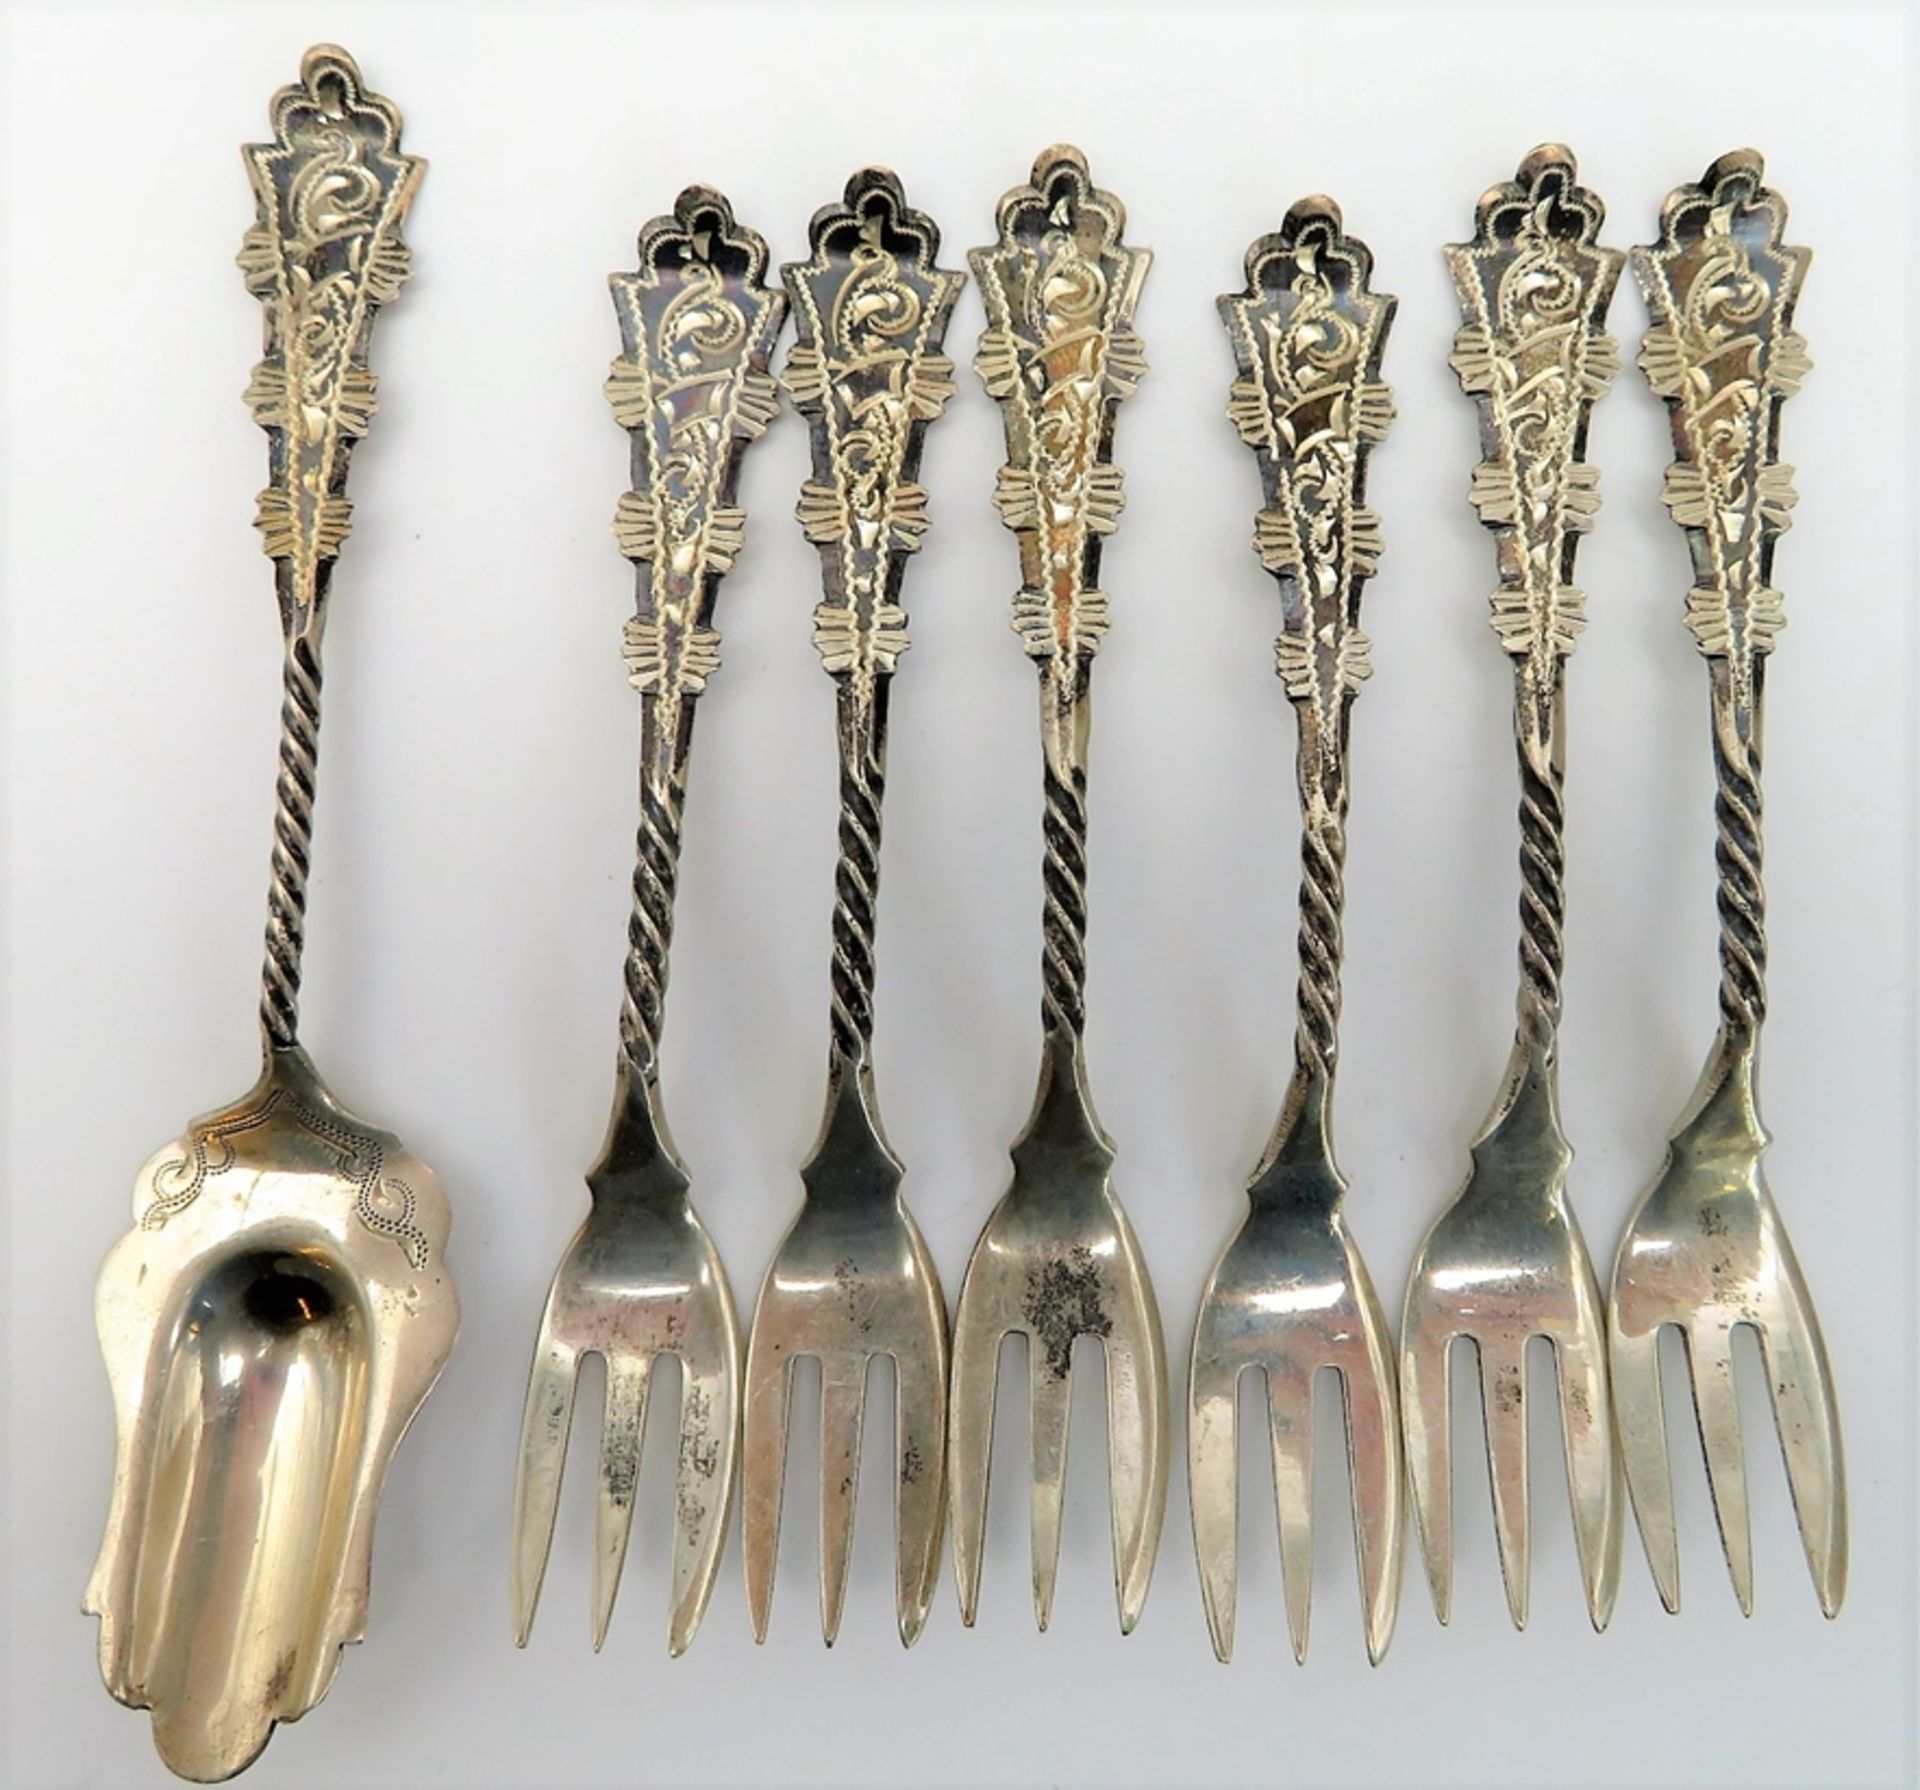 6 Kuchengabeln und Zuckerschaufel, Art-Déco-Stil, 835er Silber, gepunzt, 83 g, Gabeln l 11,5 cm, Sc